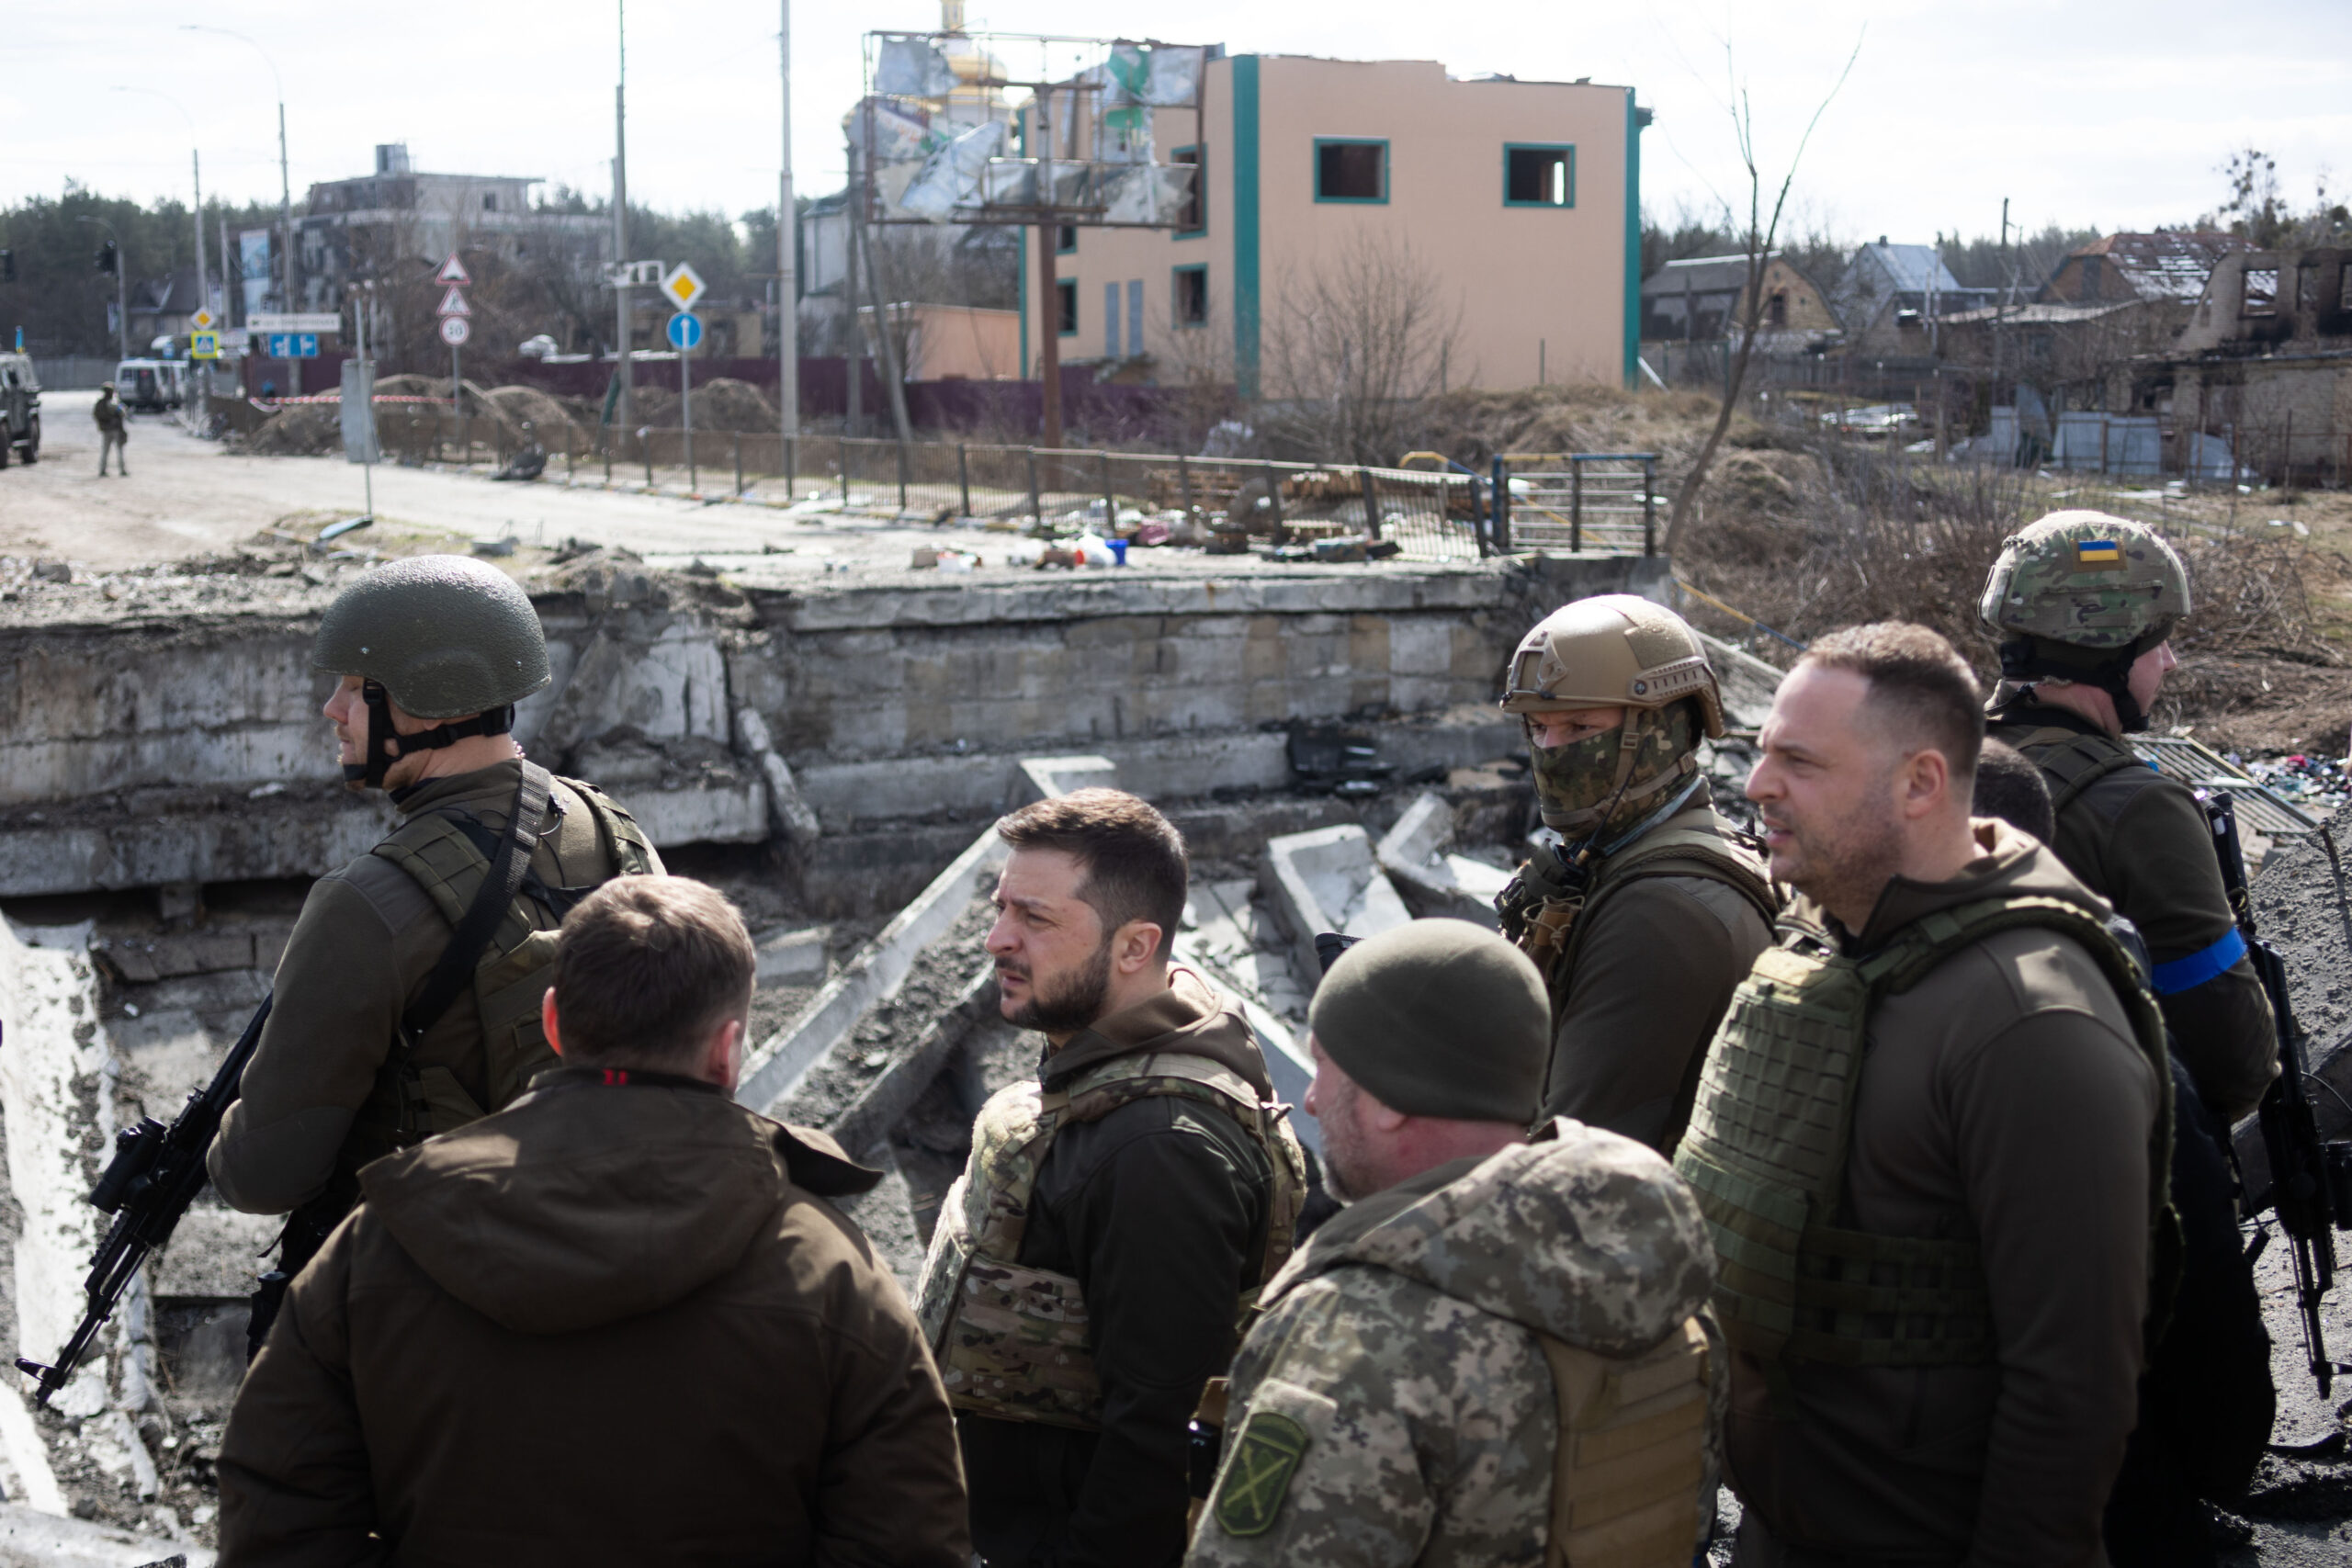 Ukraine War: Russia Has 'Lost Nearly Half' of Its Combat Effectiveness